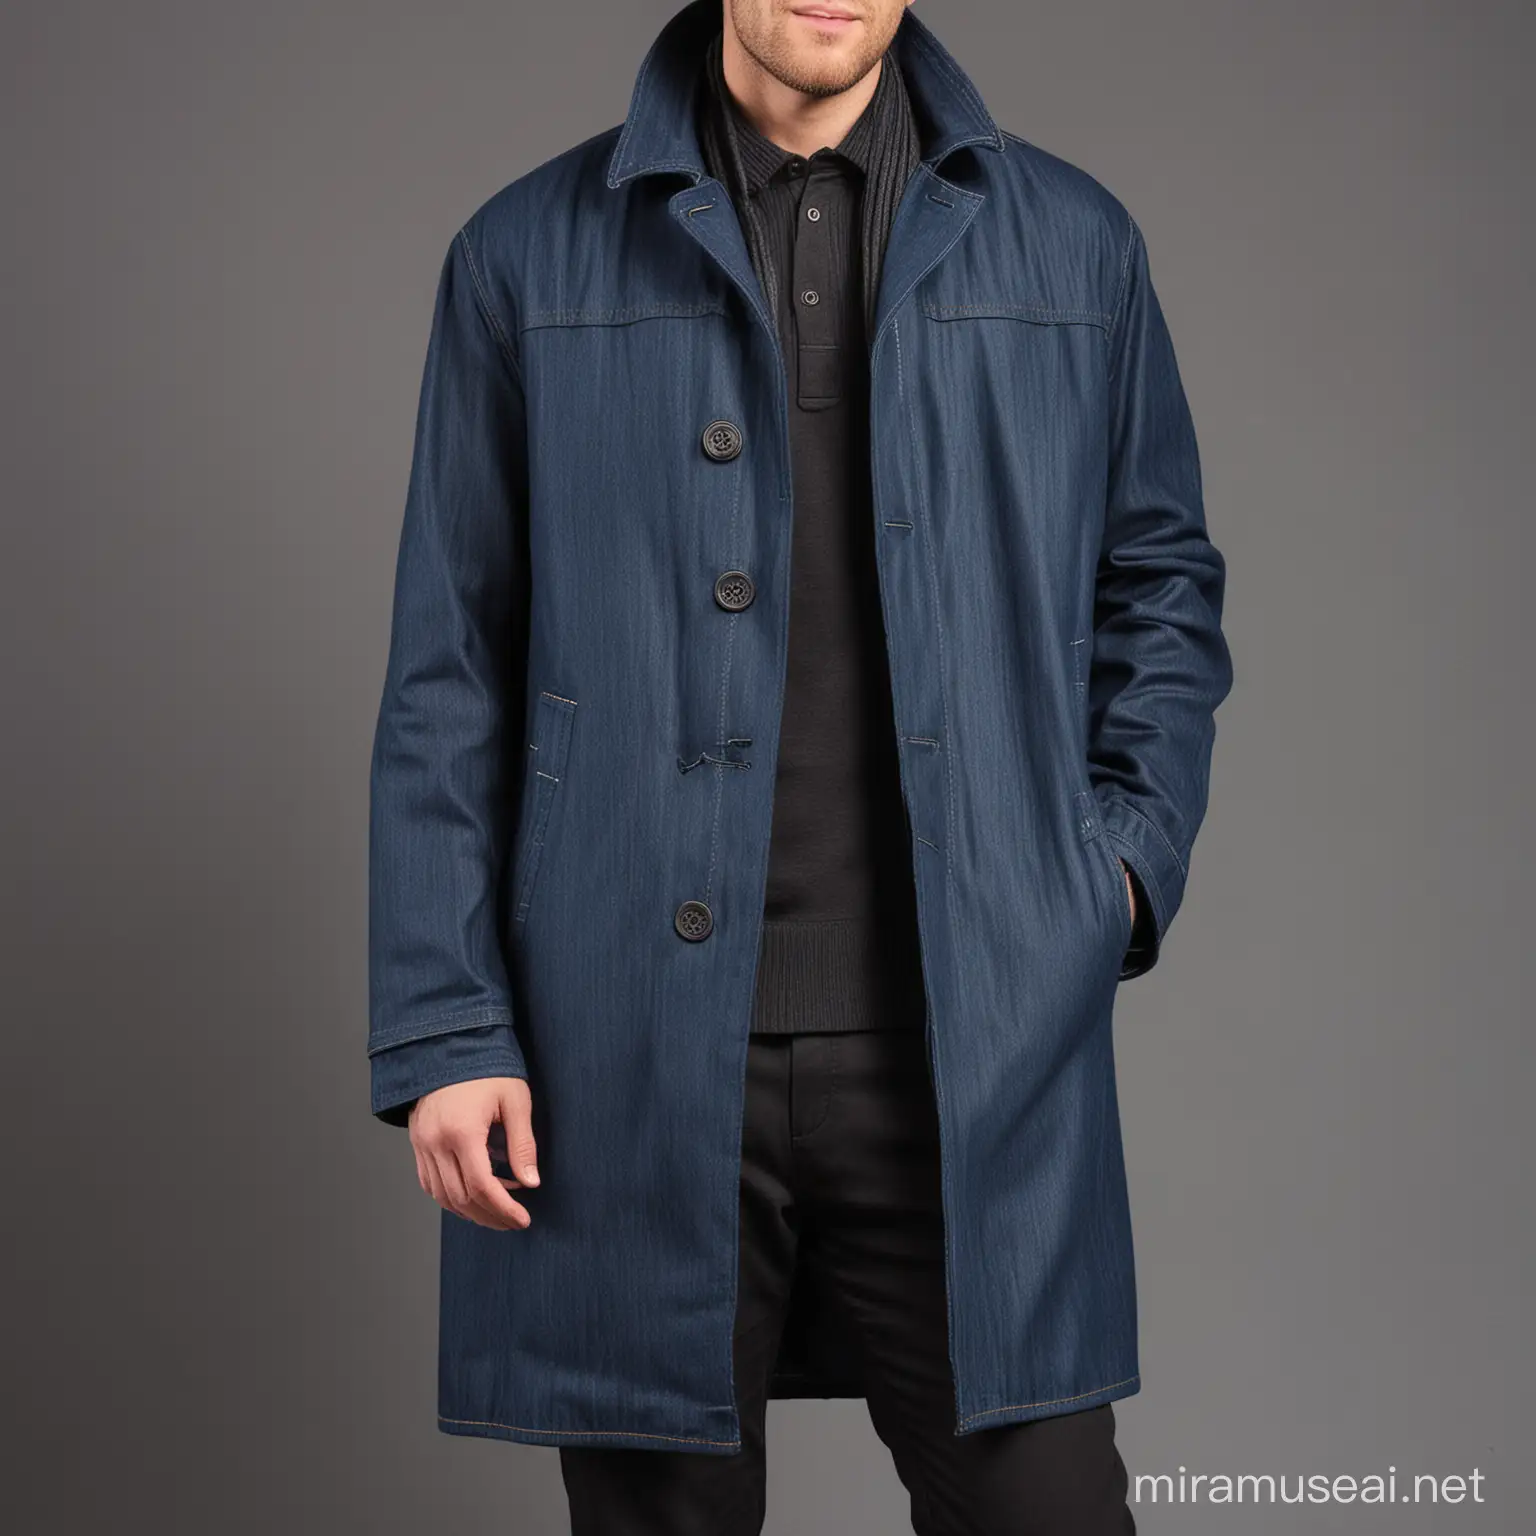 mens urban style denim 3/4 length overcoat